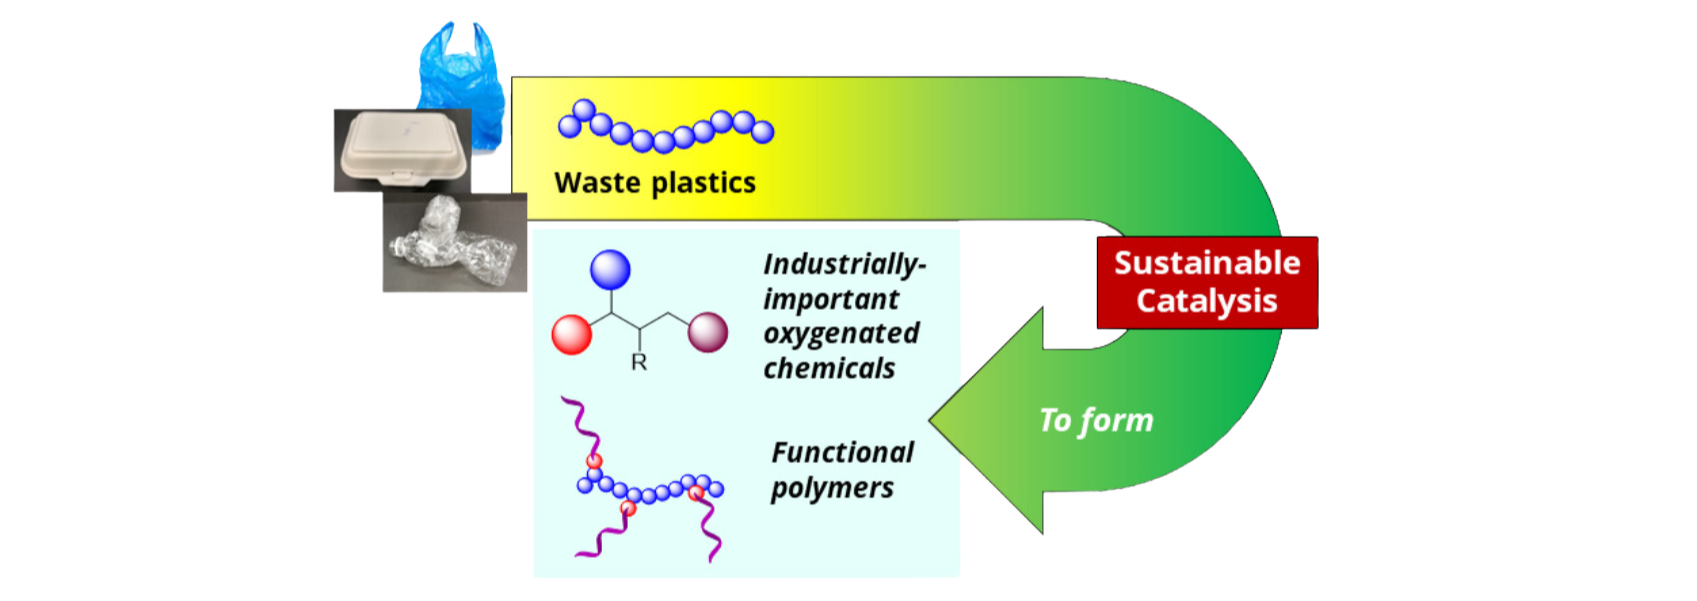 waste plastics